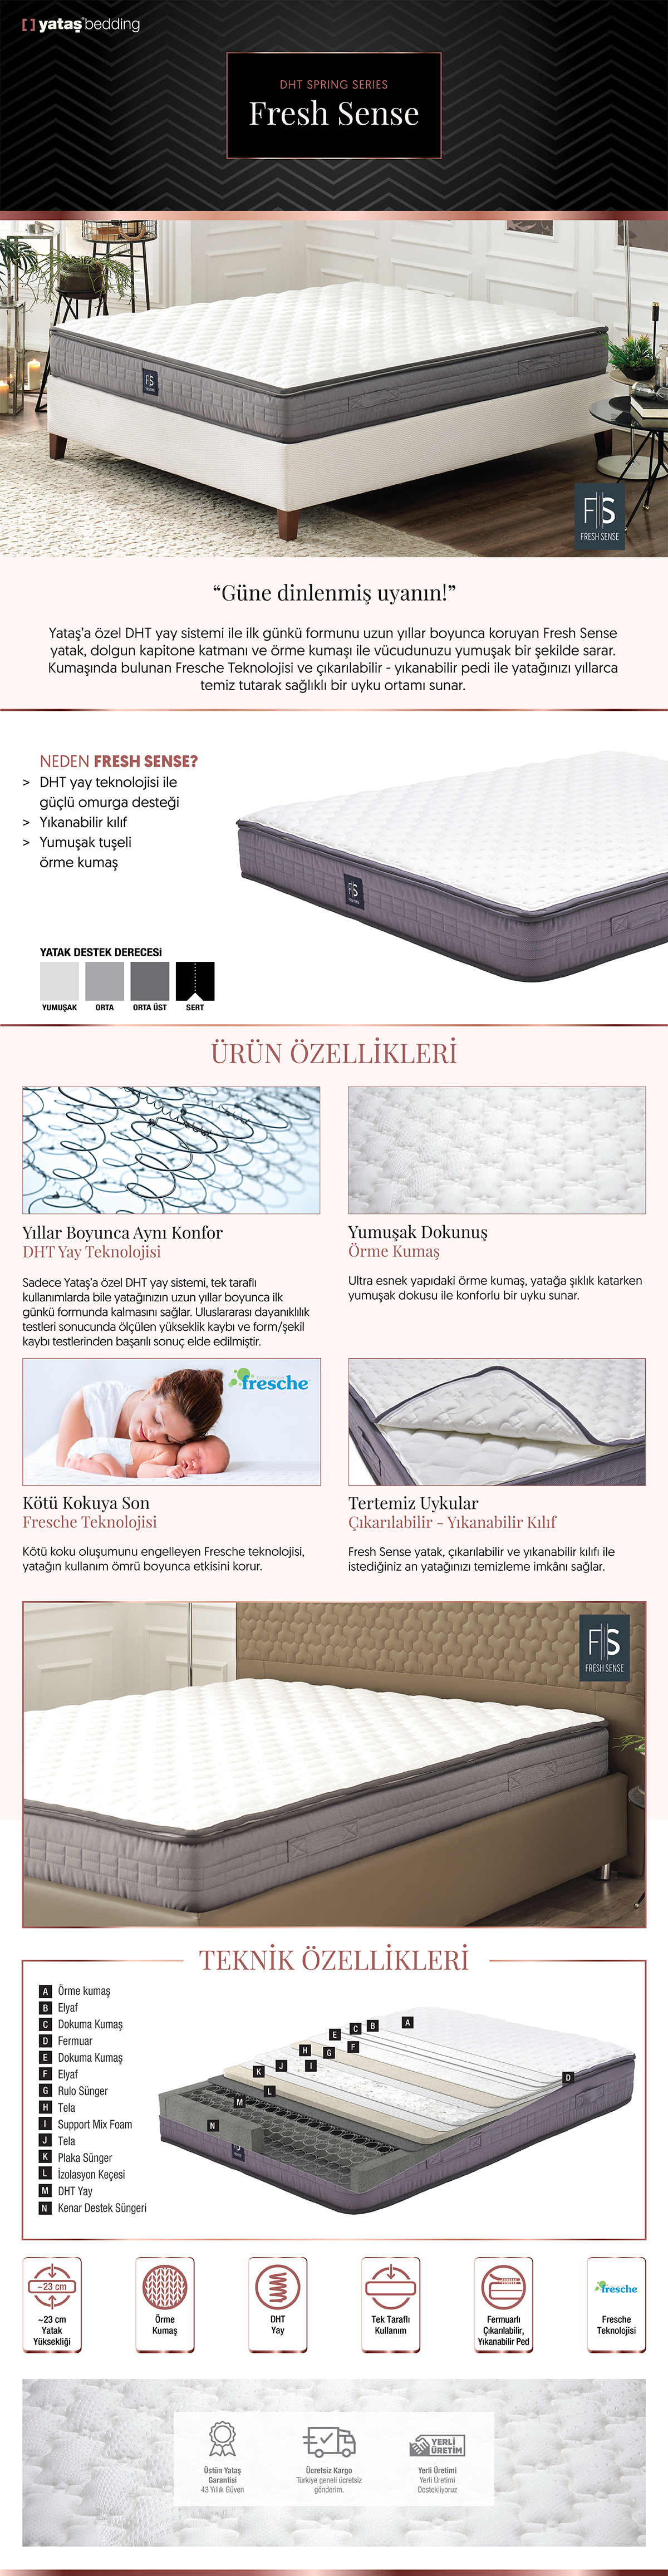 Yataş Bedding FRESH SENSE DHT Yaylı Seri Yatak (Çift Kişilik Fiyatı